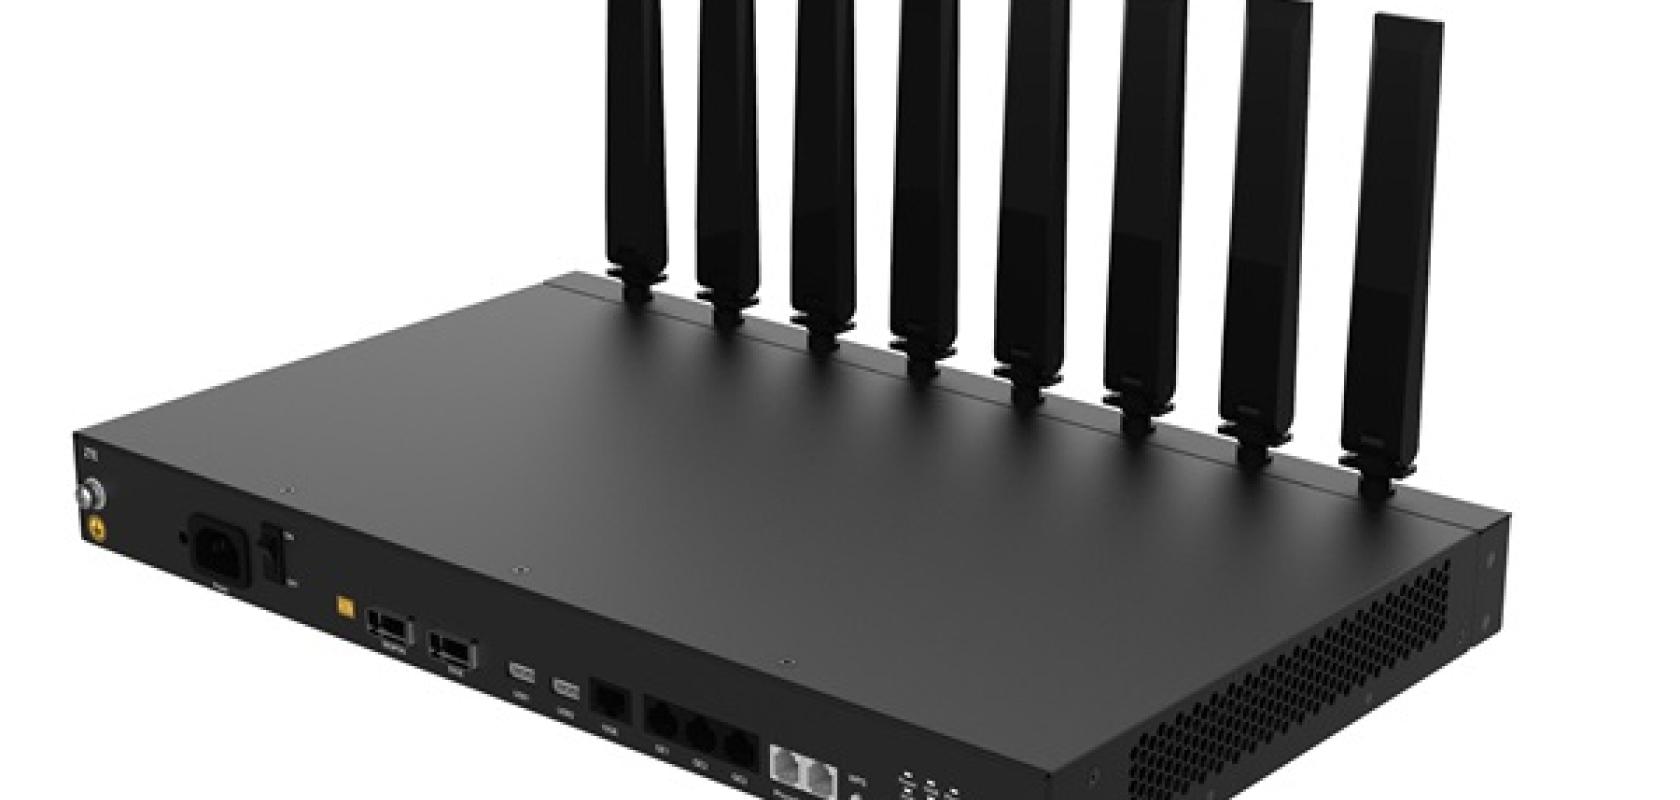 Zte presenta un router de fibra 50G-PON y WiFi 7 equipado con el chip  Mediatek Filogic 880